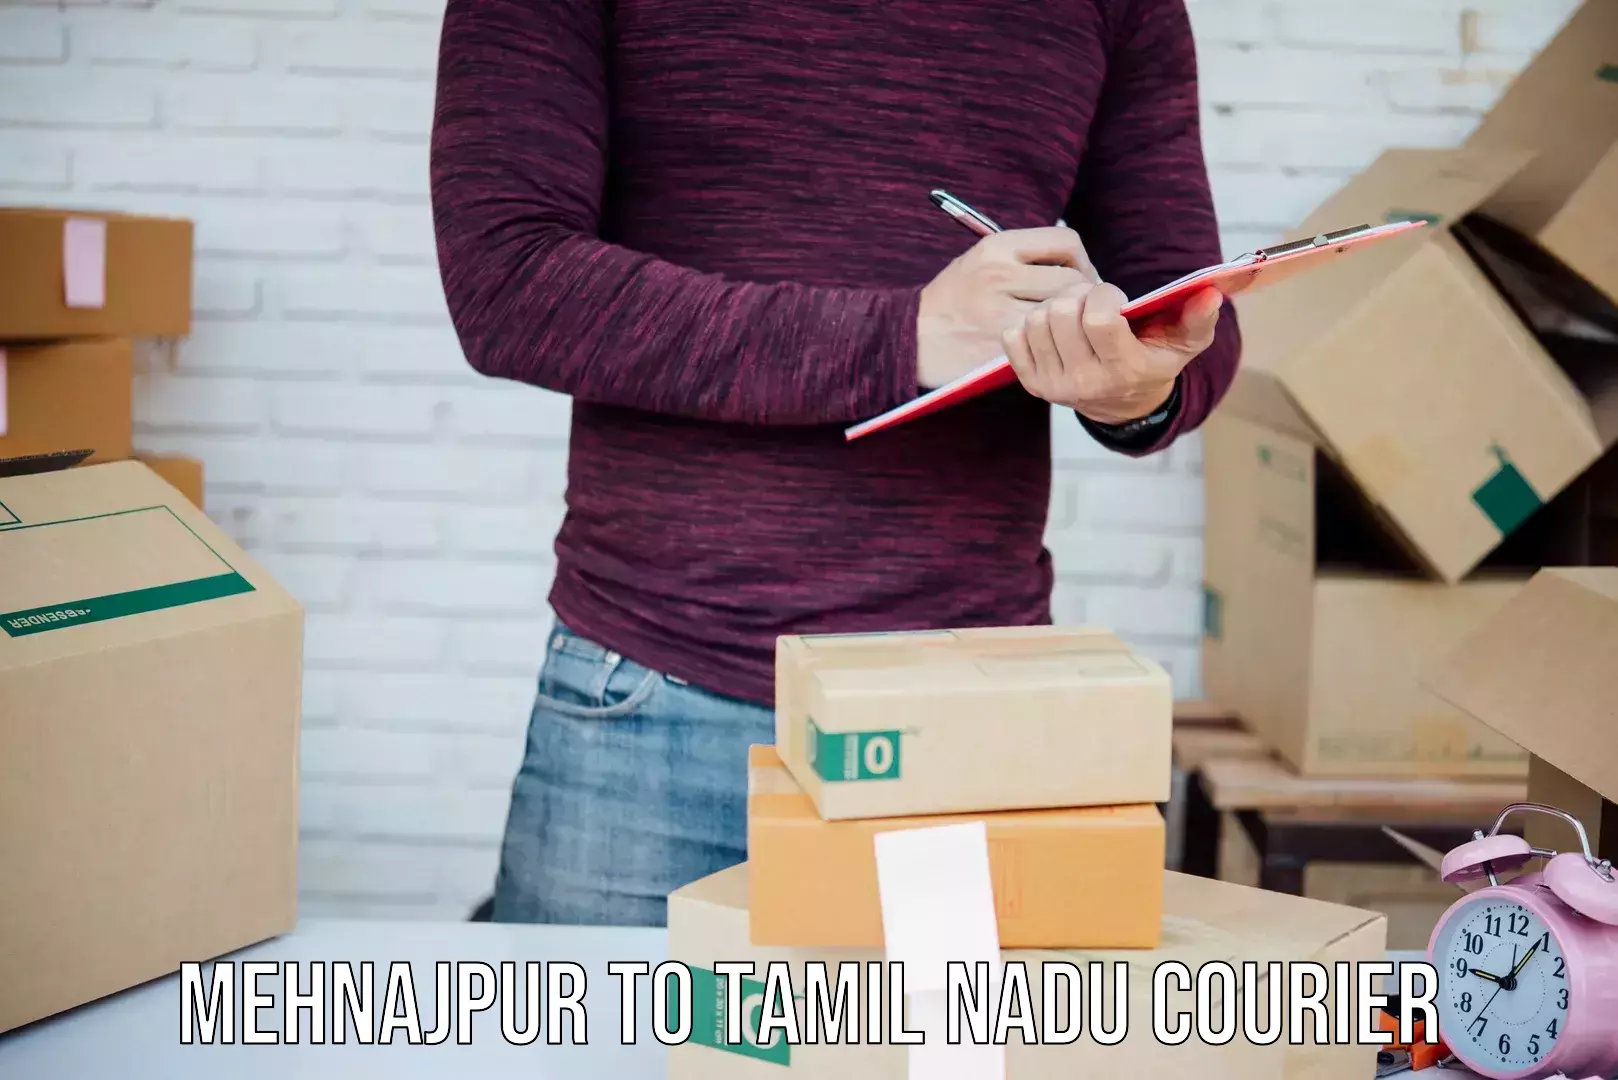 Customer-focused courier Mehnajpur to Melakaveri